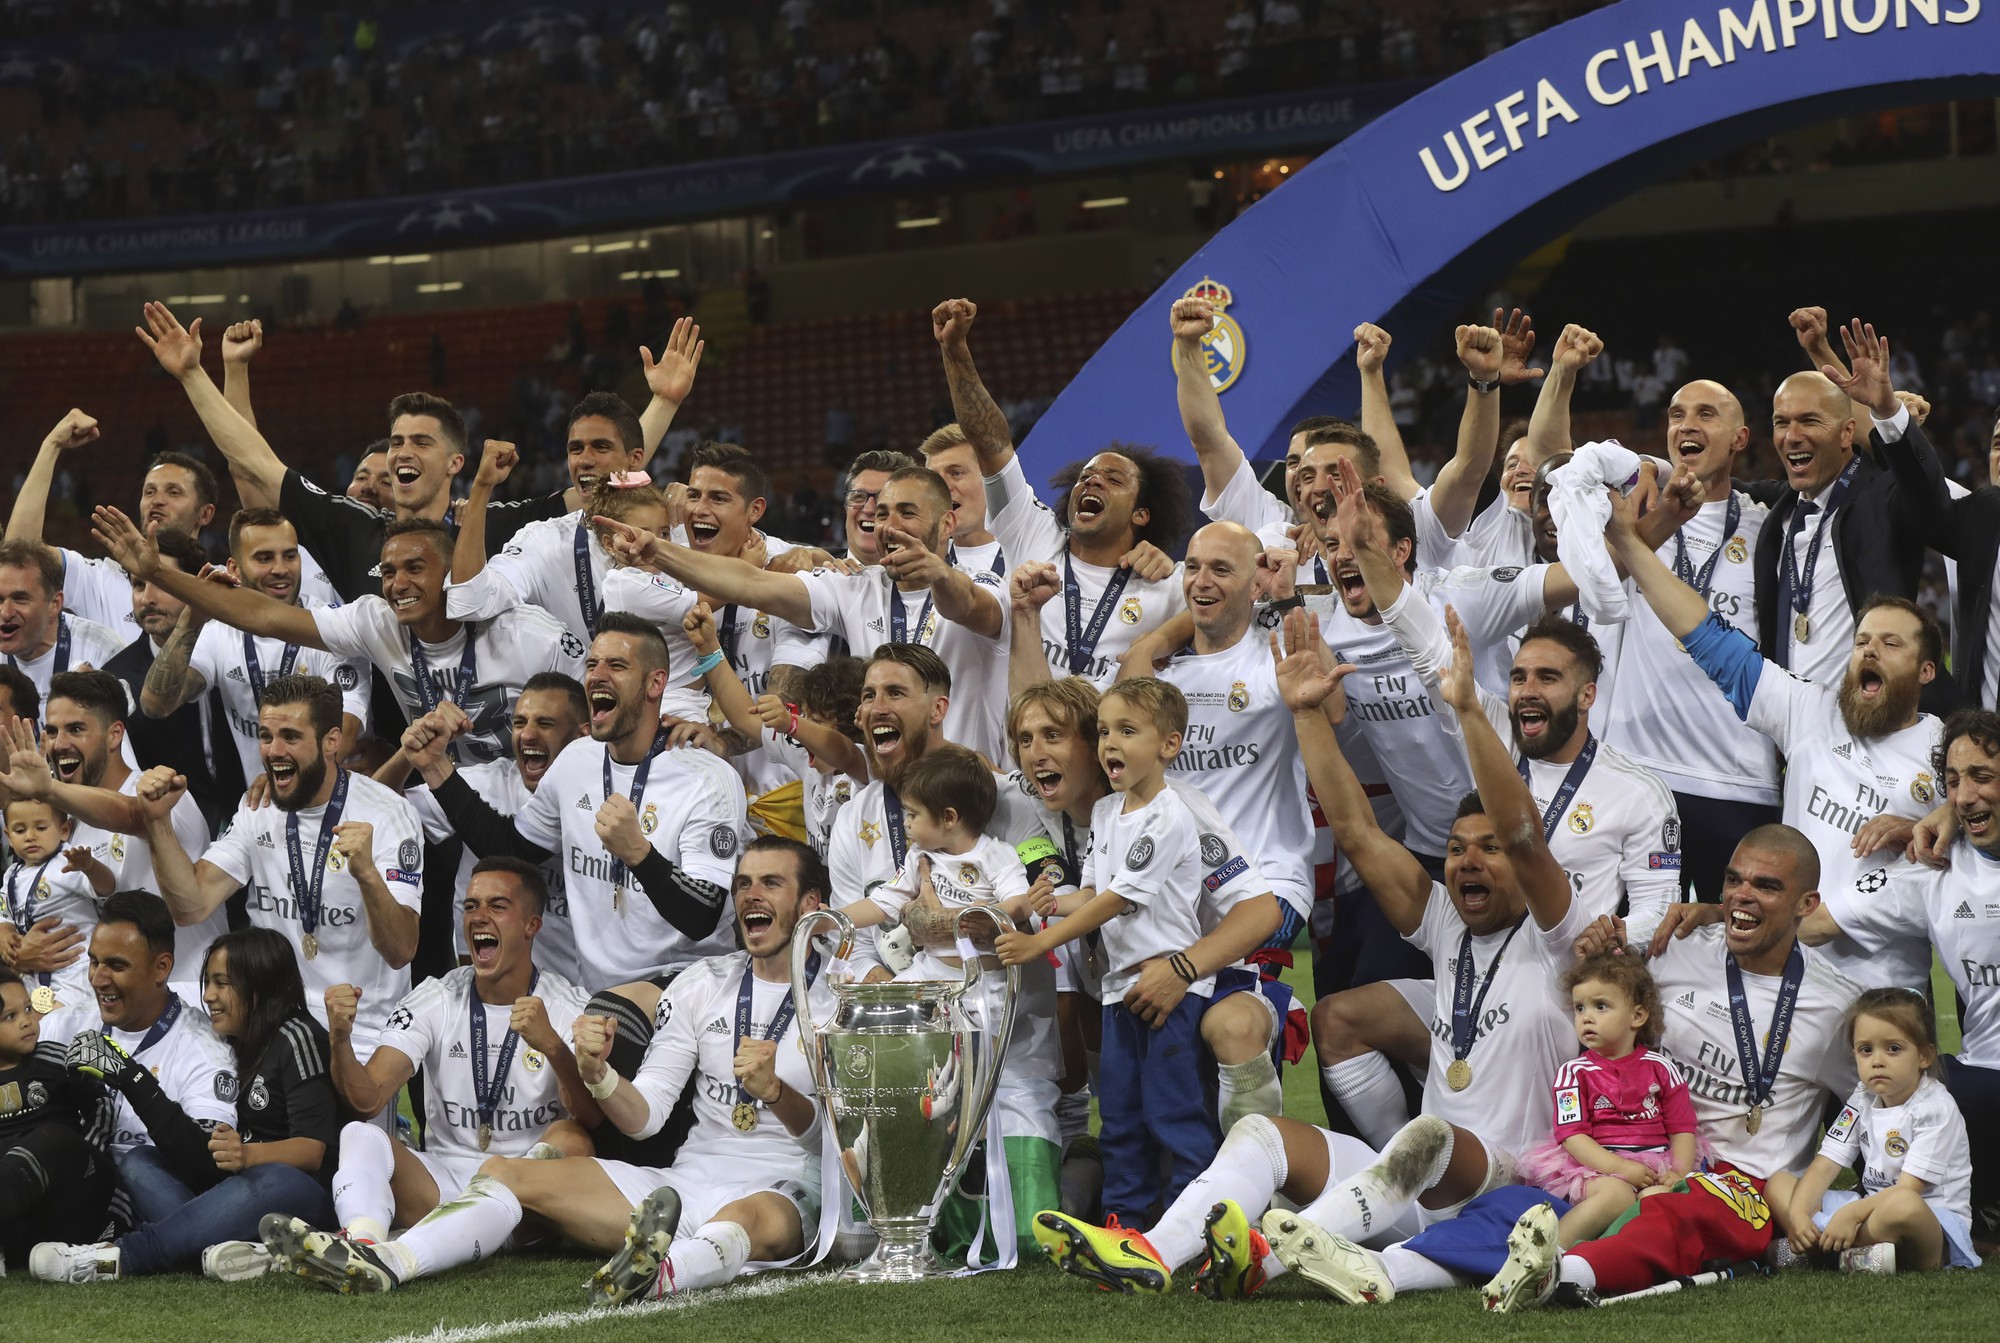 Tuy nhiên, với những ông lớn đến từ 4 giải VĐQG còn lại trong Top 5 giải VĐQG hàng đầu châu Âu và đặc biệt là từ phía UEFA - cơ quan quản lý, điều hành Champions League, tất cả có lý do để ghen tị khi nhìn vào mức thưởng trên trời tại Premier League.  Một ví dụ đơn giản, mùa trước Real Madrid giành danh hiệu C1/Champions League lần thứ 11 trong lịch sử, song số tiền thưởng họ nhận về (94 triệu euro) từ UEFA vẫn còn kém chút xíu so với mức thưởng cho đội xếp thứ… 11 tại Premier League (77 triệu bản, tương đương 99,5 triệu euro).  Đừng quên, mức thưởng kể trên của Real đã là kỷ lục trong lịch sử Champions League. Bởi mùa trước, bắt đầu chu kỳ 3 năm 2015-2018, UEFA đã đồng loạt tăng các mức tiền thưởng.  Ví dụ, tiền thưởng cho đội giành quyền góp mặt ở vòng bảng (8,6 triệu euro), và cho mỗi trận thắng ở vòng bảng (1 triệu euro/trận) đã tăng tới 50%, lần lượt lên các con số 12 triệu euro và 1,5 triệu euro.